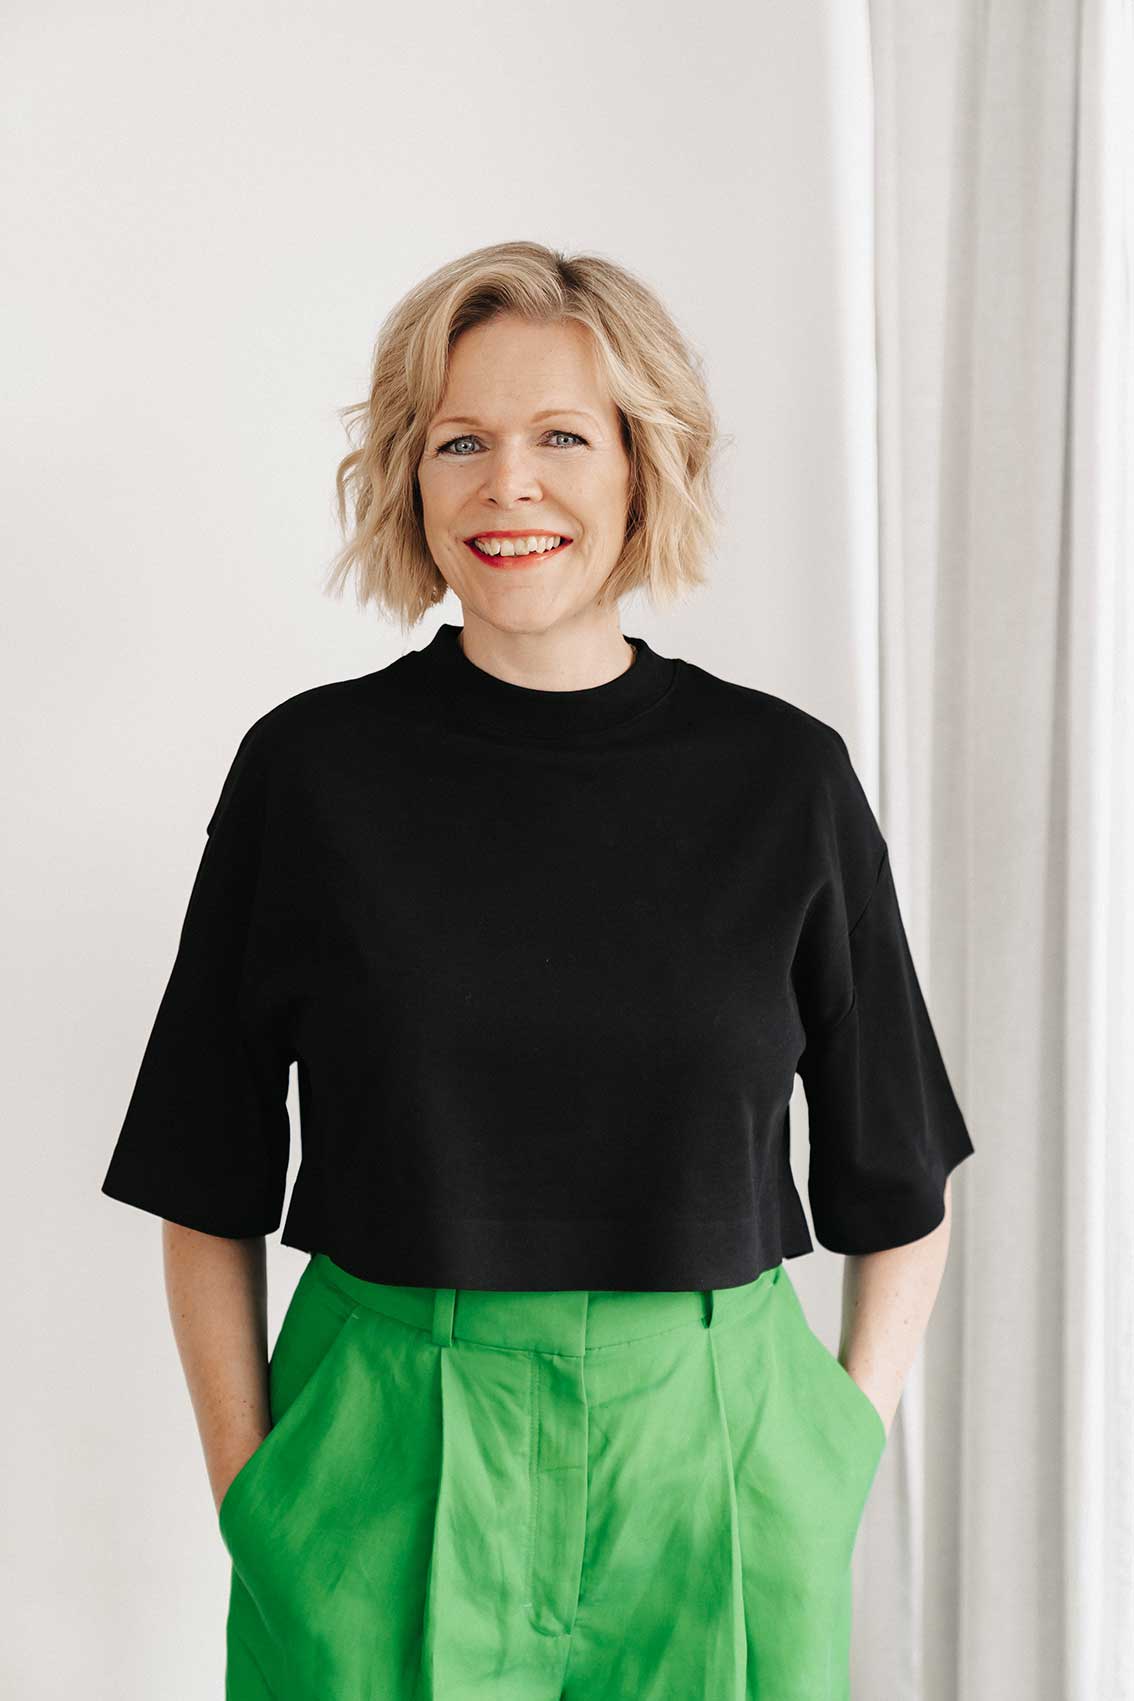 Portrait von Britta im schwarzen Shirt und grüner Hose, stehend, lachend, Blick in die Kamera